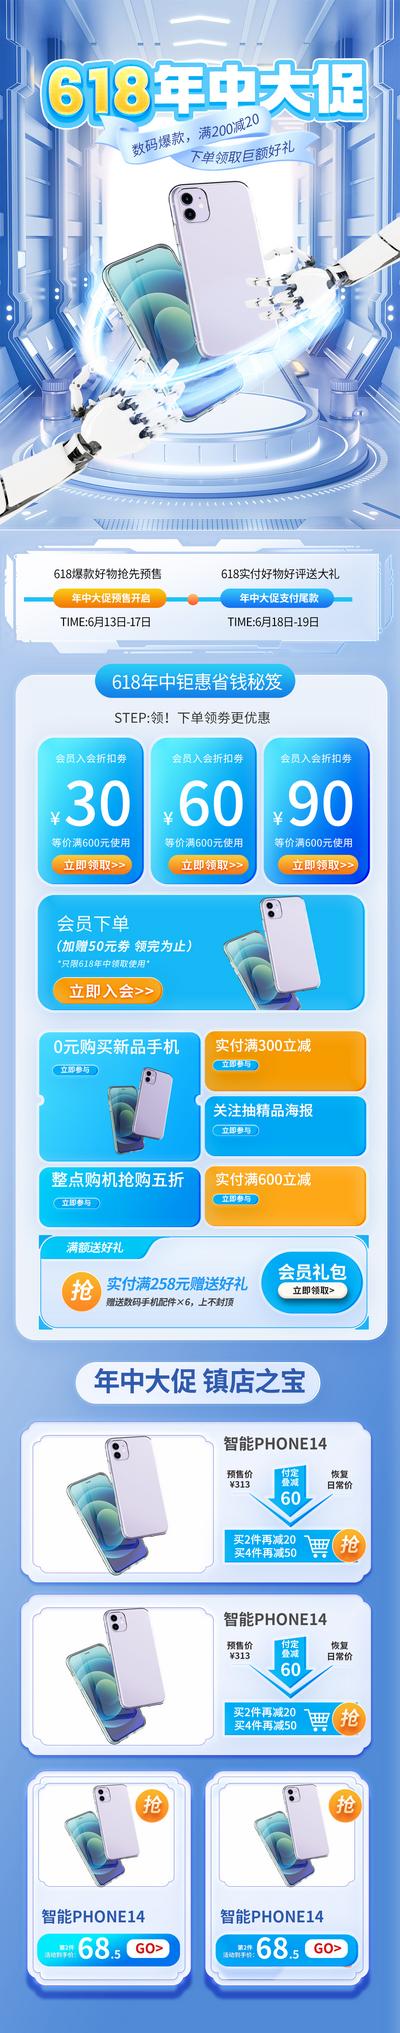 南门网 电商 科技 促销 618 双十一 大促 数码 首页 手机 购物节 3C 专题 促销